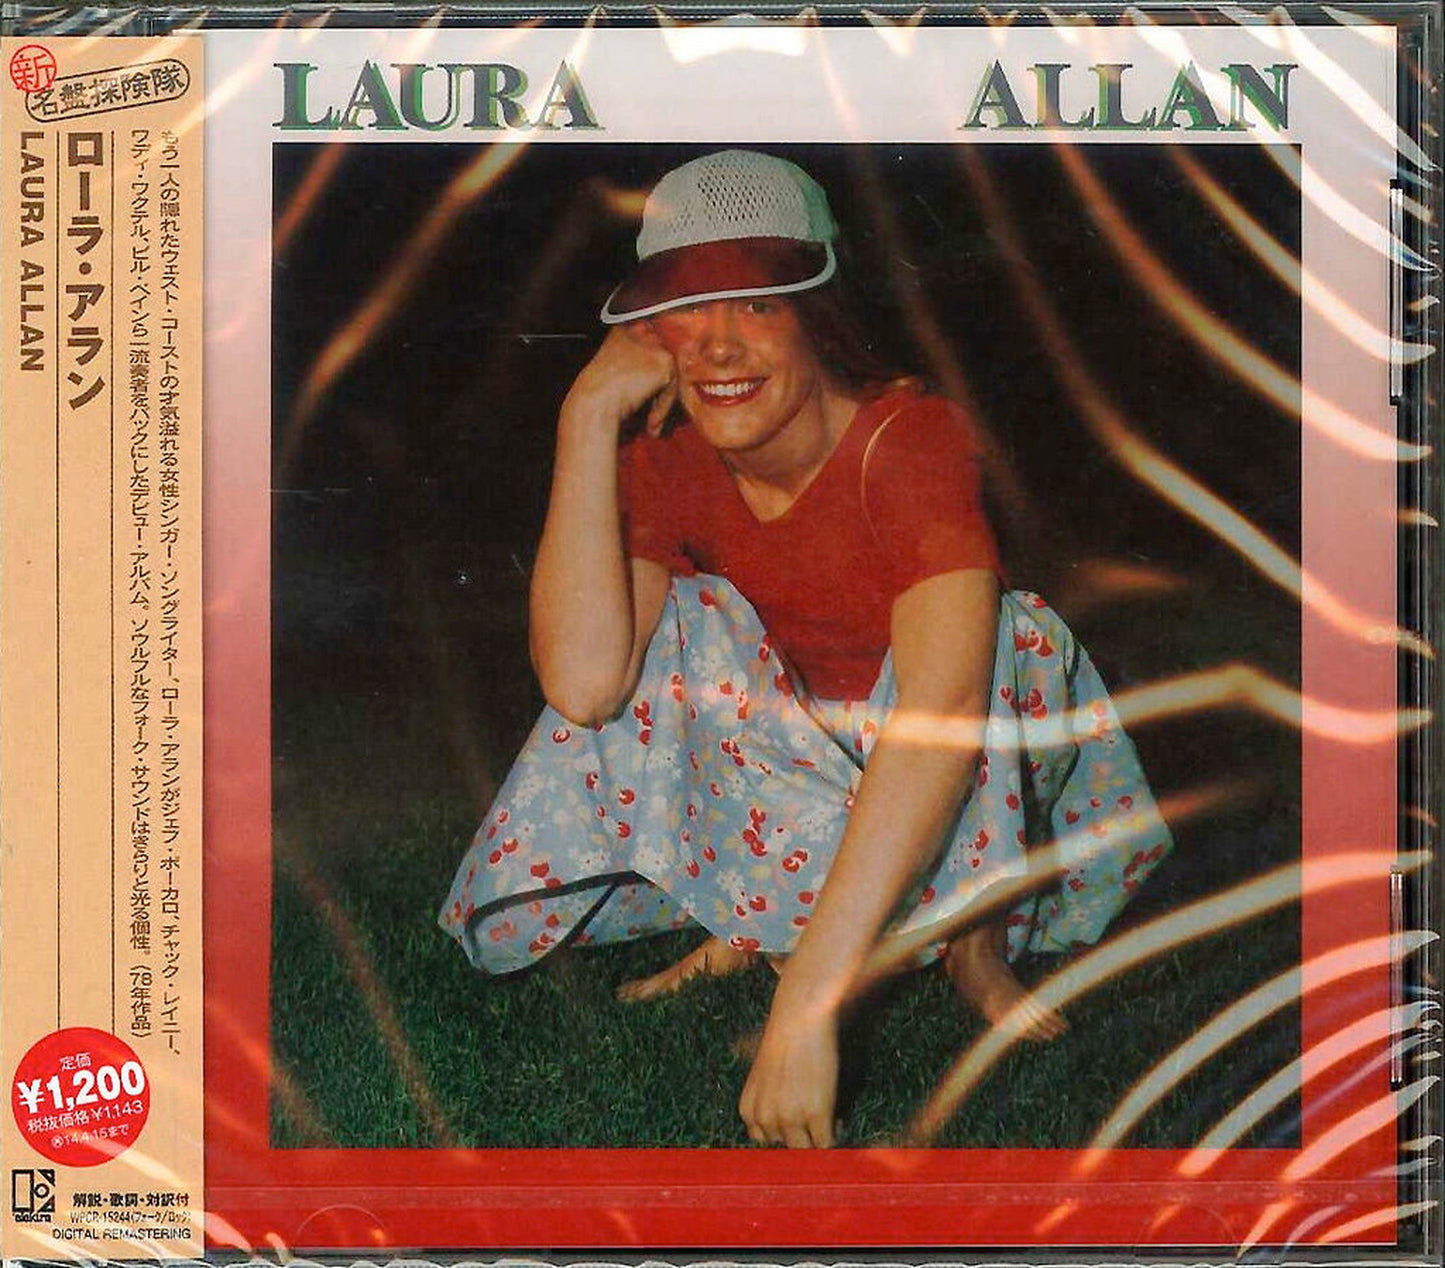 Laura Allan - Laura Allan - Japan CD